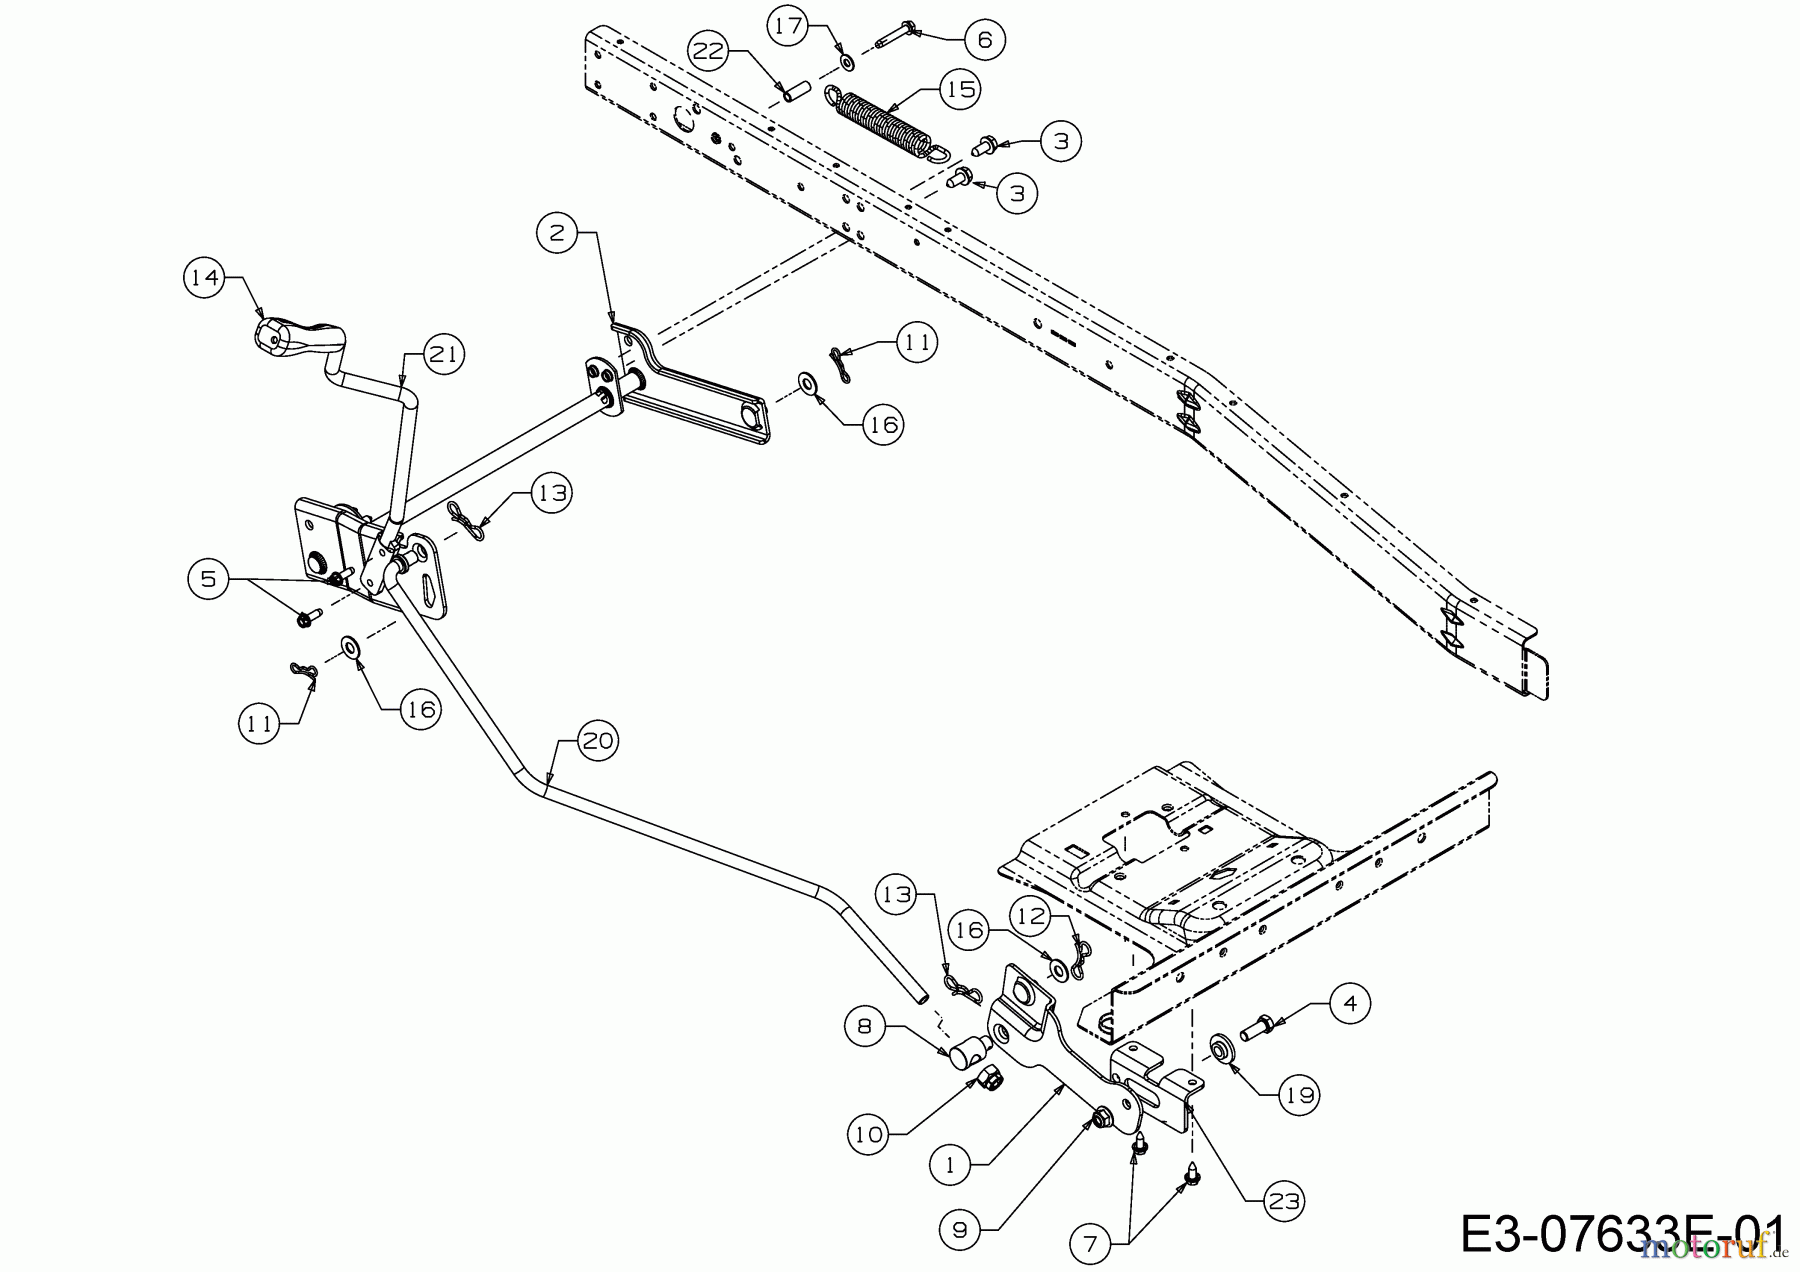  WOLF-Garten Expert Rasentraktoren Scooter Pro 13B226HD650  (2017) Mähwerksaushebung